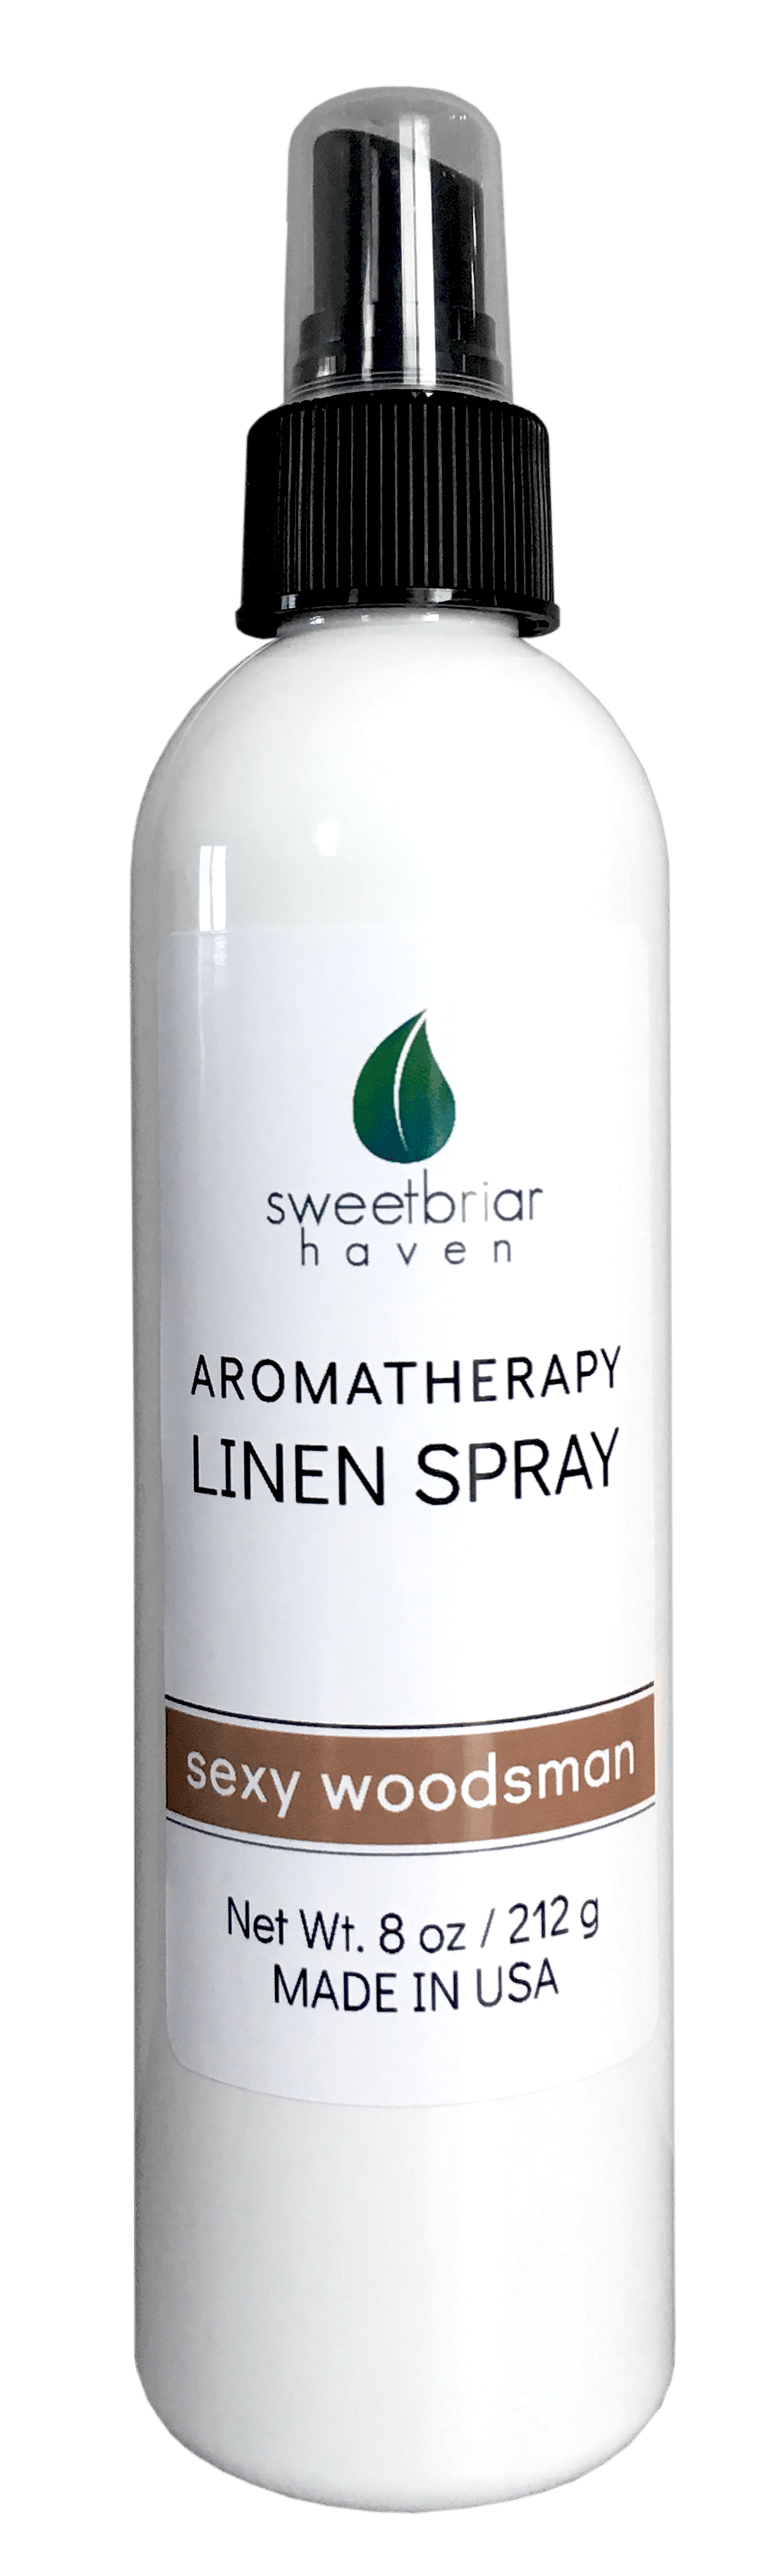 Image of Aromatherapy Spray